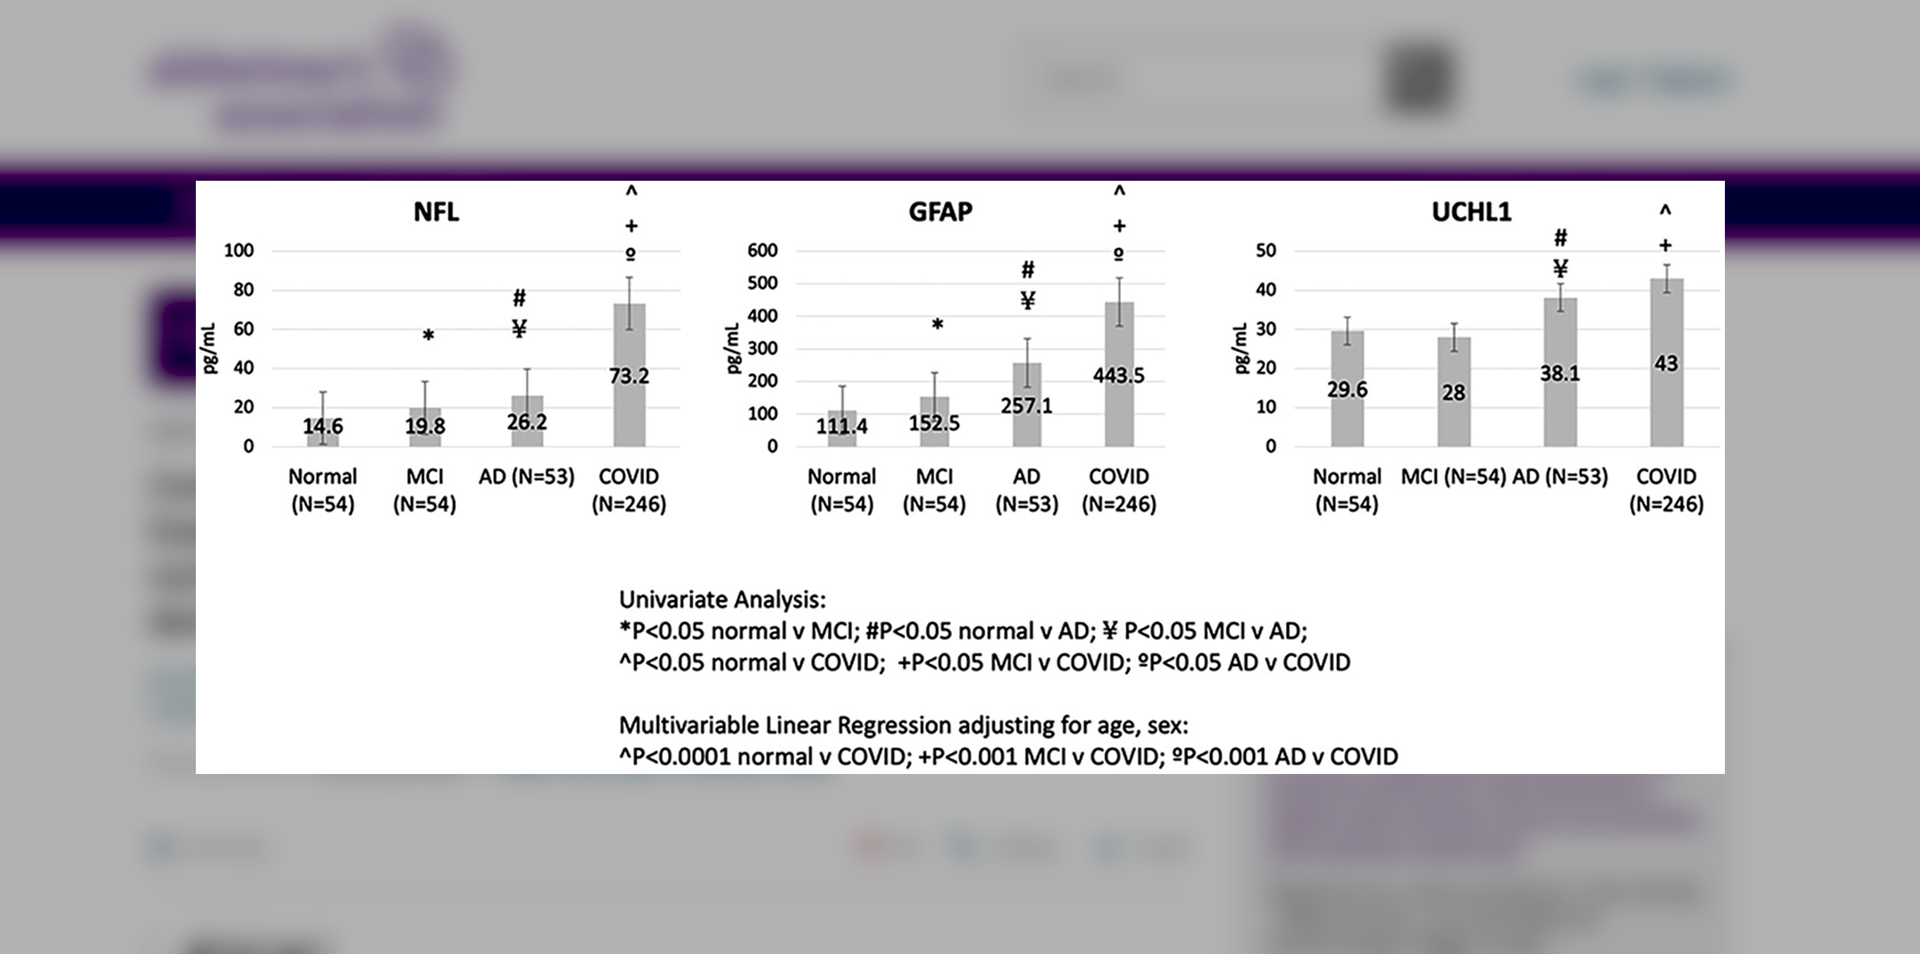 Сравнения маркеров повреждения аксонов (NFL), глиальных клеток (GFAP) и нейронов (UCHL1) у больных ковидом (столбик над словом CoViD) и страдающих болезнью Альцгеймера (столбик над аббревиатурой AD). Фото: Alzheimer's & Dementia — Wiley Online Library